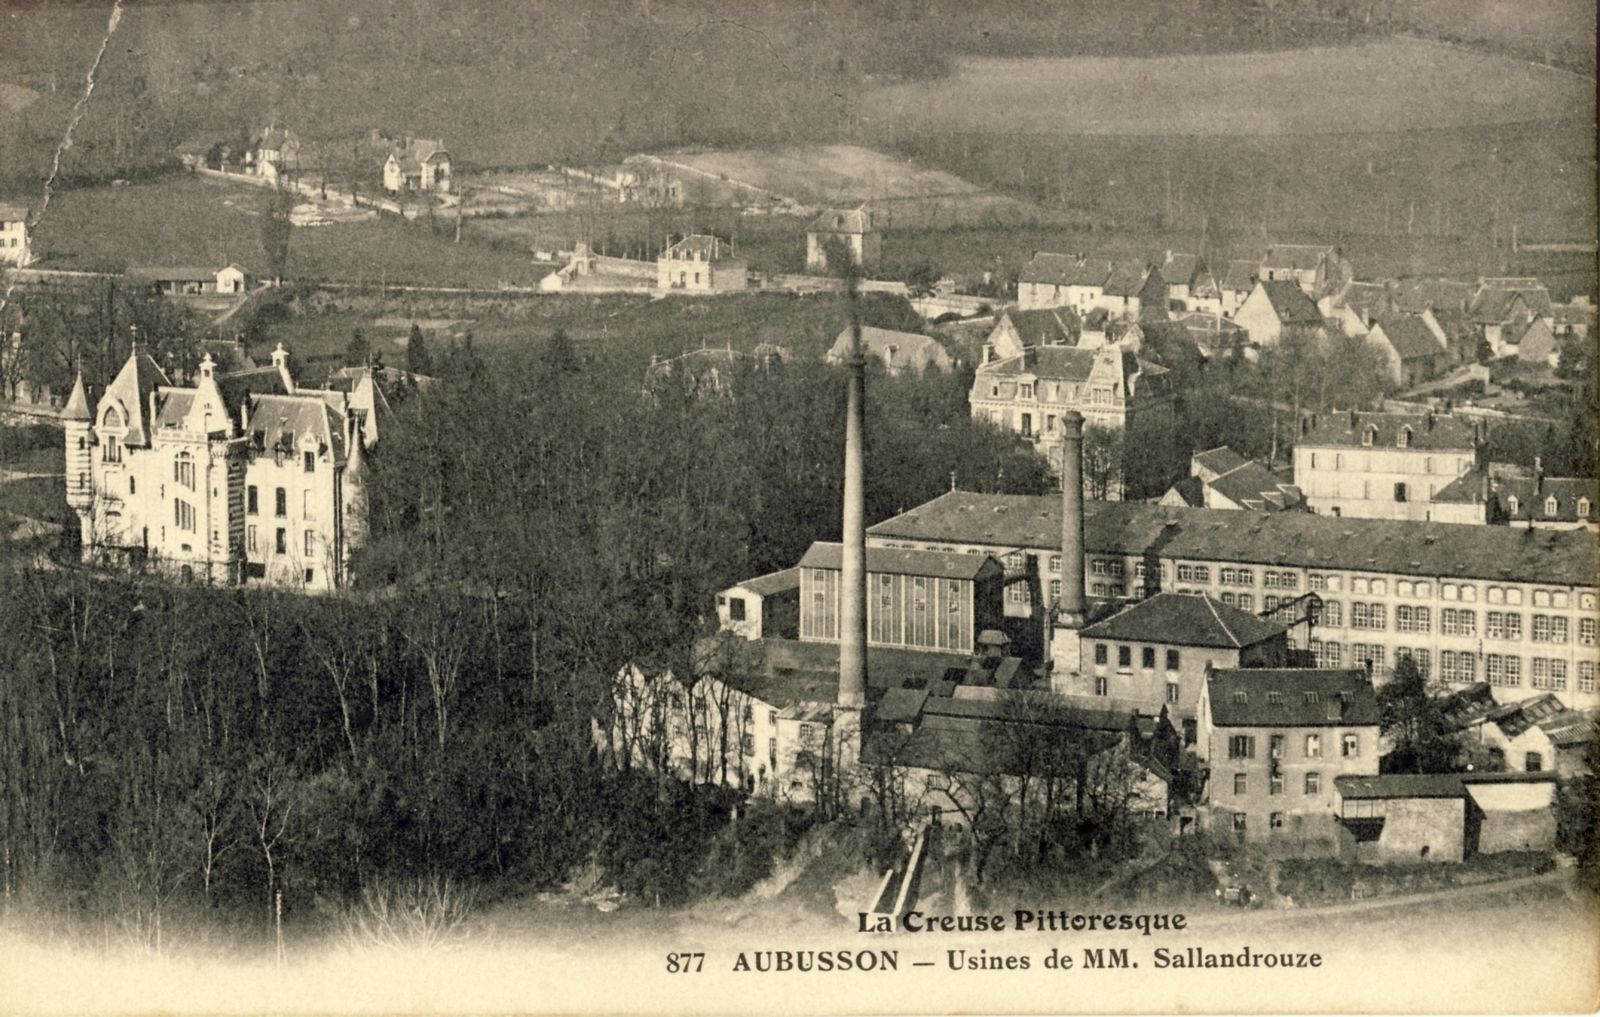 Carte postale (début du 20e siècle) des usines Sallandrouze (collection particulière)